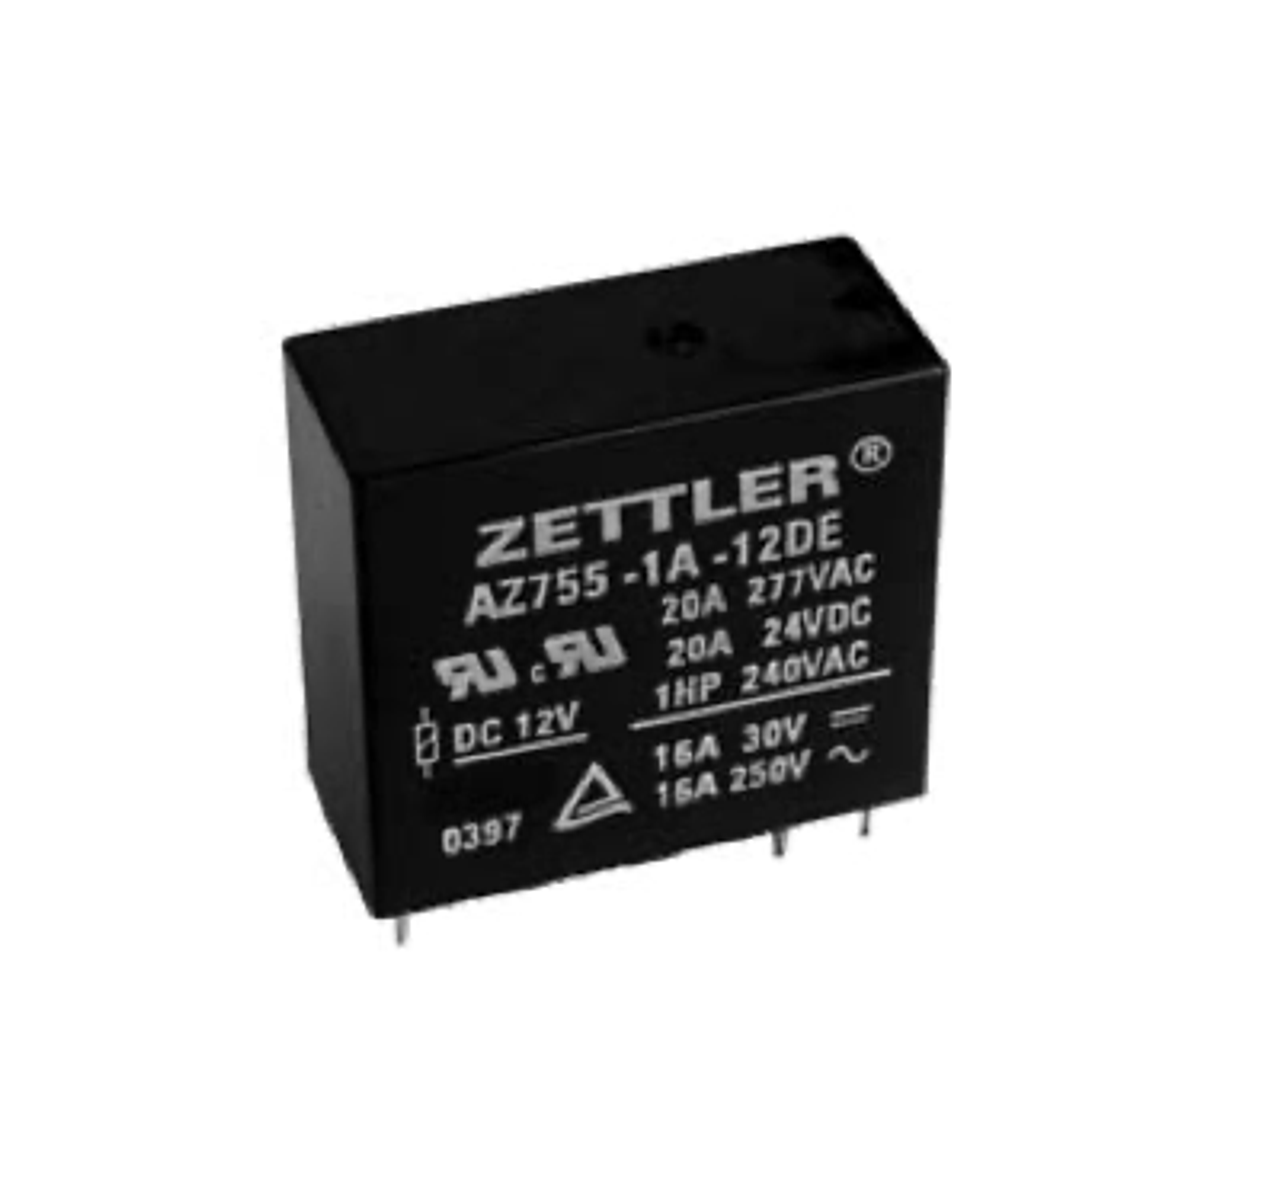 American Zettler AZ755-1B-12D Power Relay